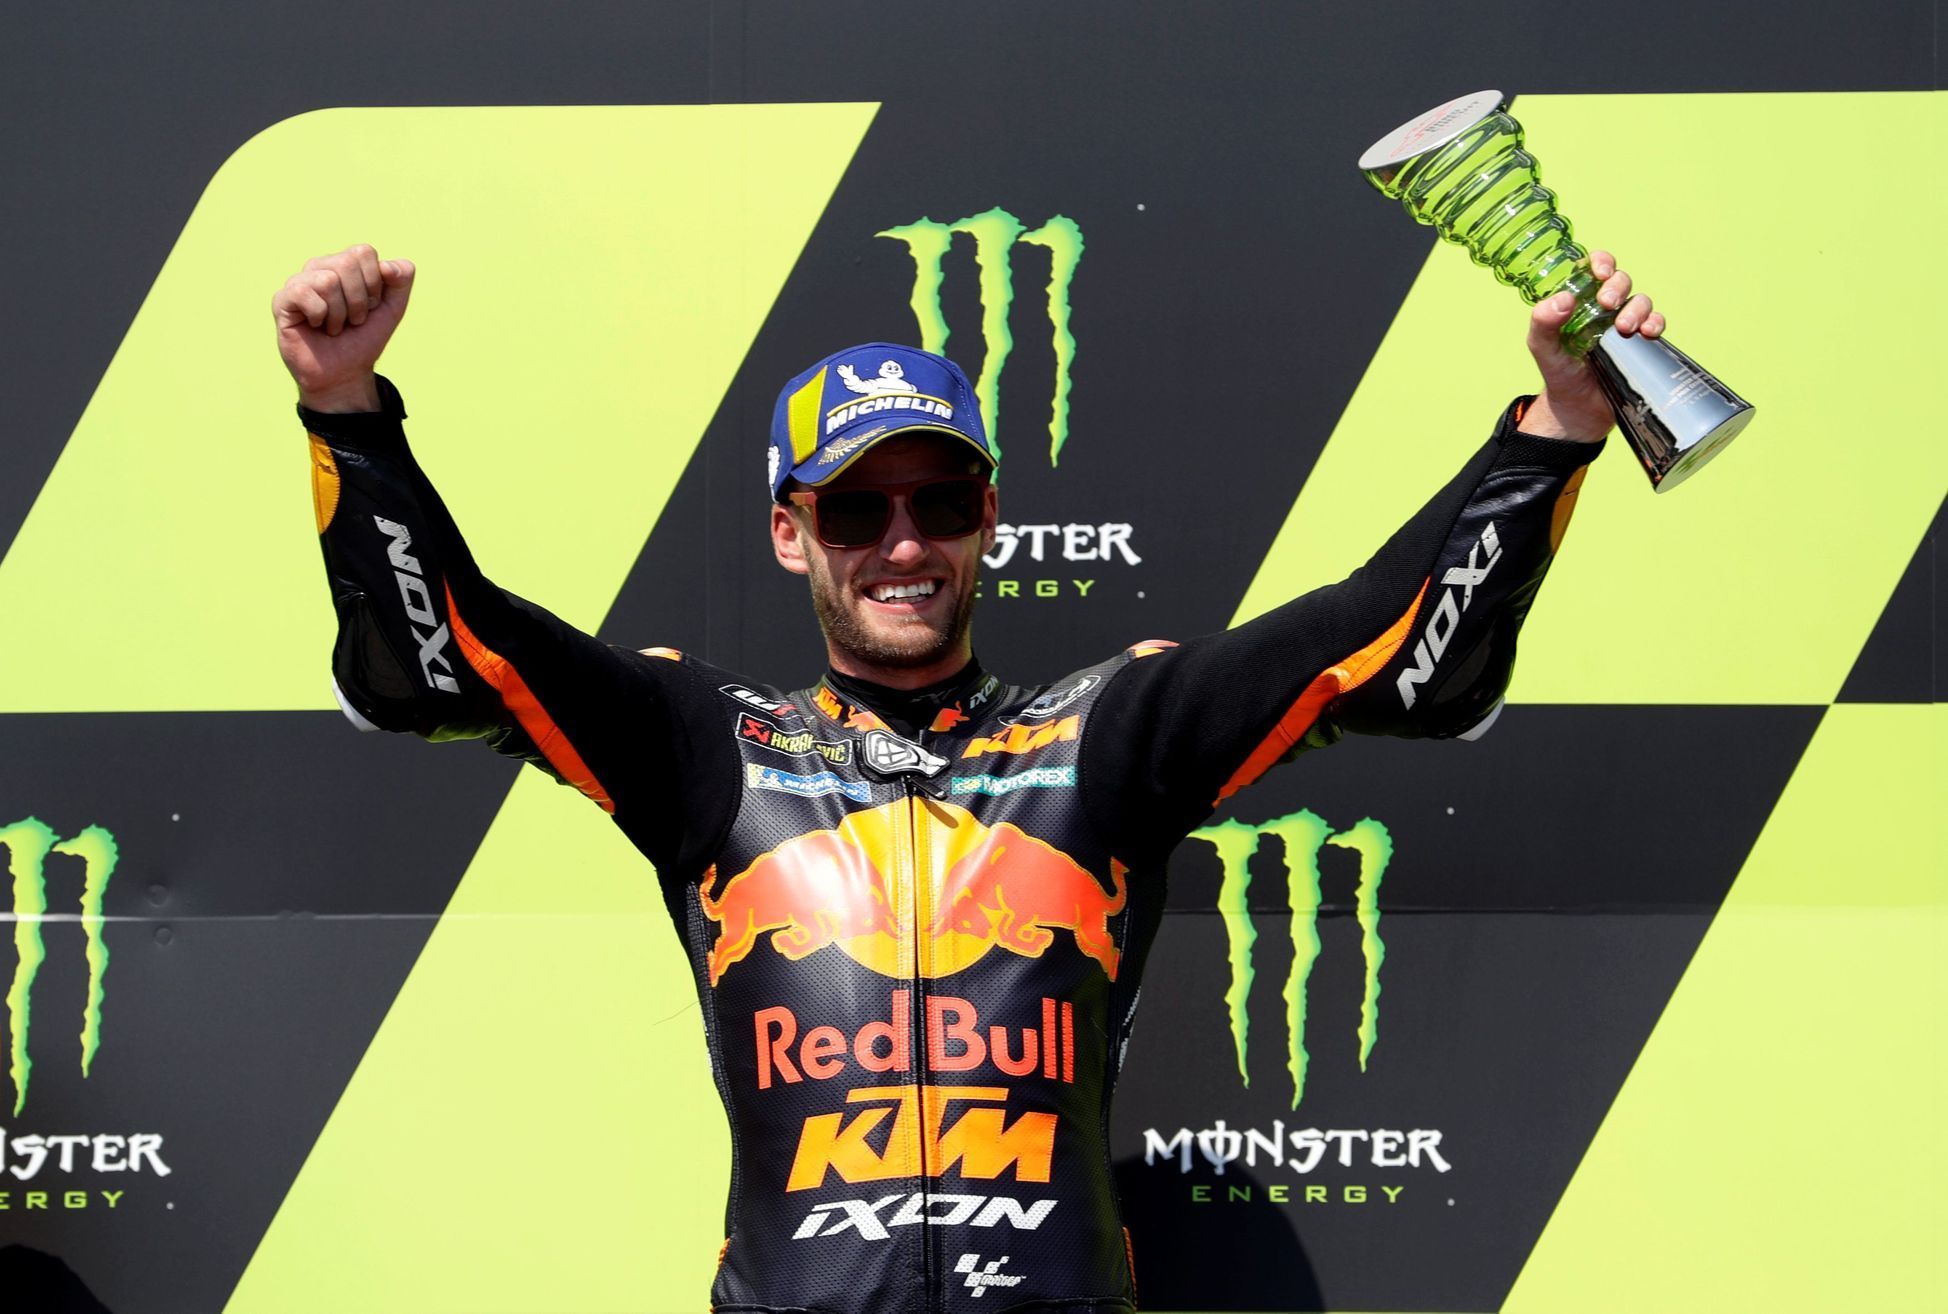 Brad Binder slaví triumf v Grand Prix České republiky třídy MotoGP v Brně 2020